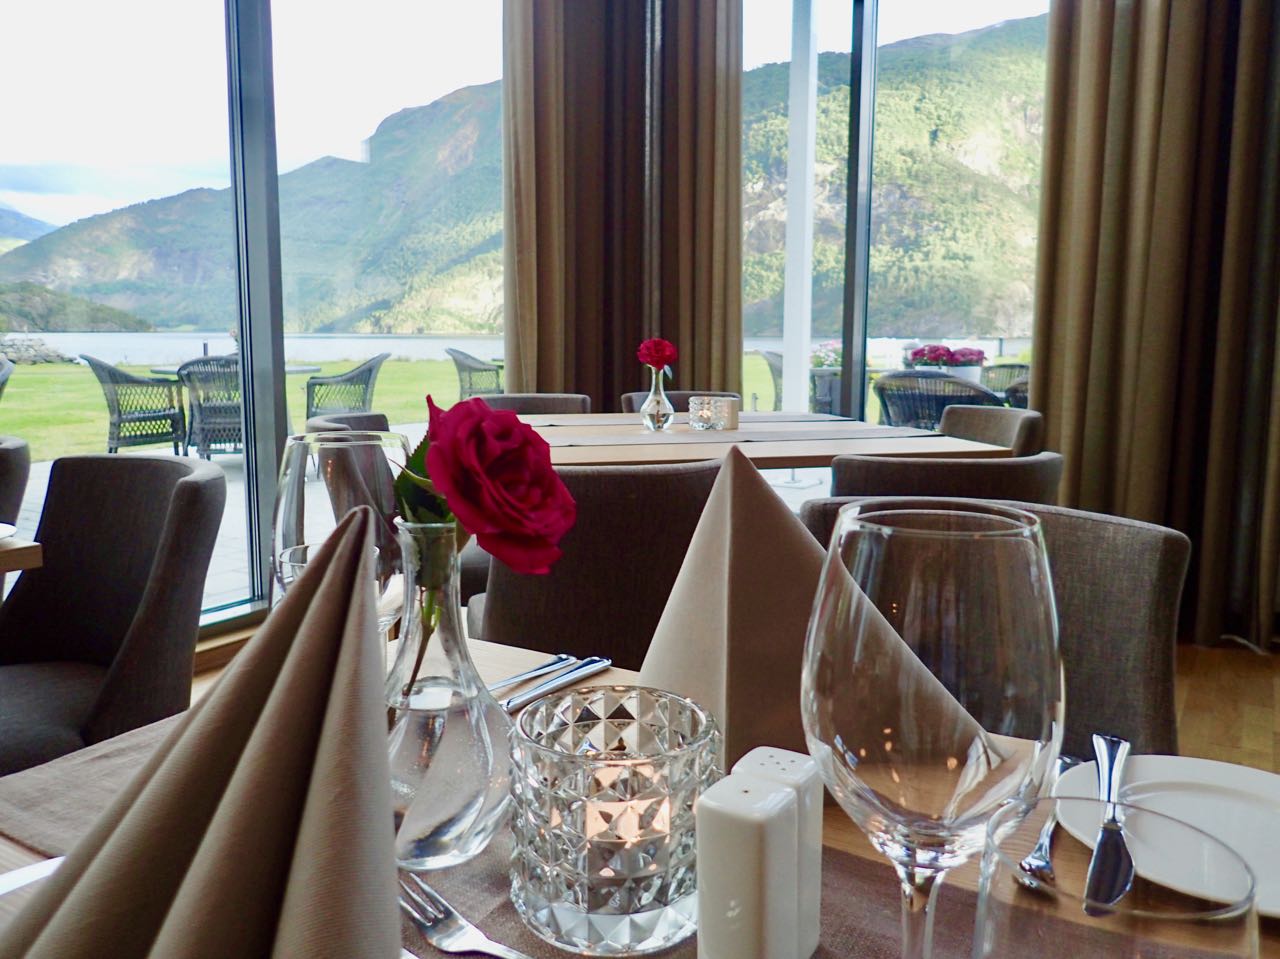 Valldal fjordhotell dinner restaurant review